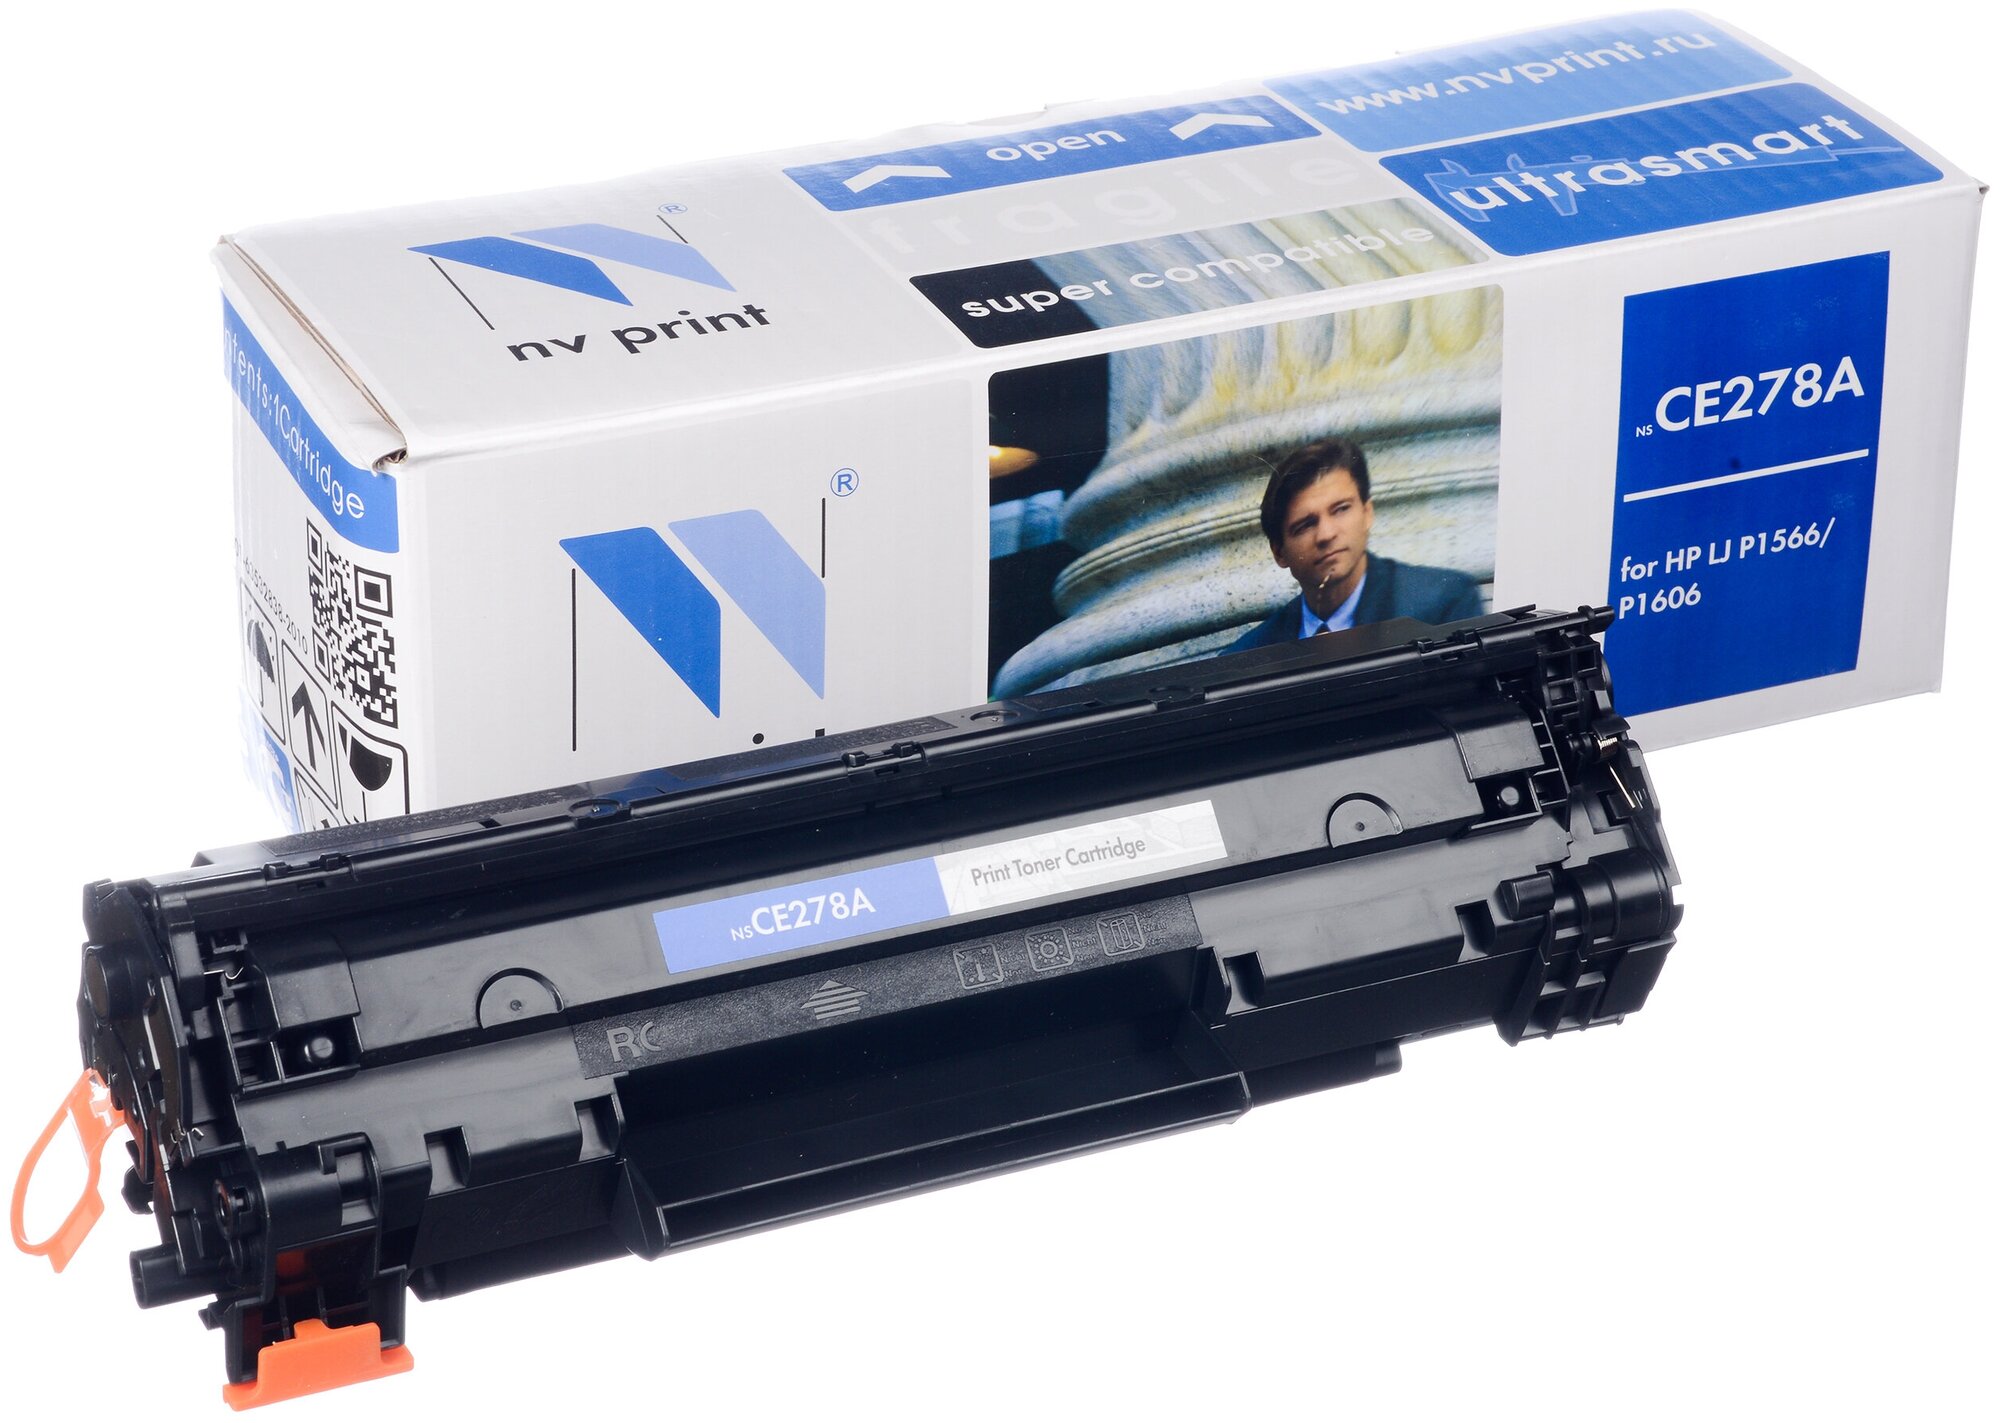 Картридж NV Print CE278A для HP LaserJet Pro P1566/M1536dnf/P1606dn совместимый